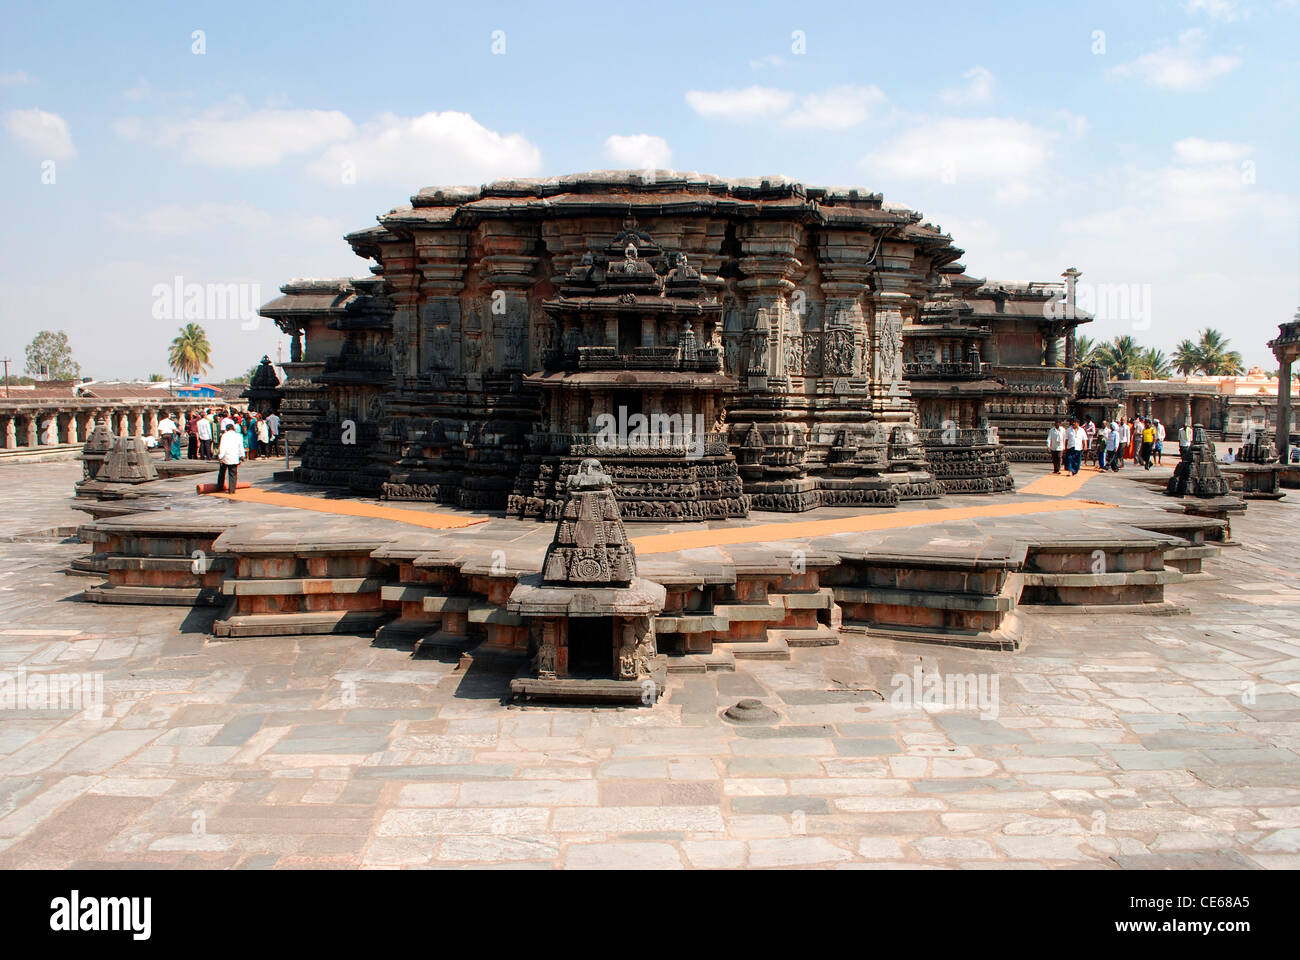 Chennakeshava-Tempel, Belur, Karnataka, Indien. Dieser Tempel erbaut von Hoysala König Vishnivardhana ist berühmt für Steinskulpturen. Stockfoto